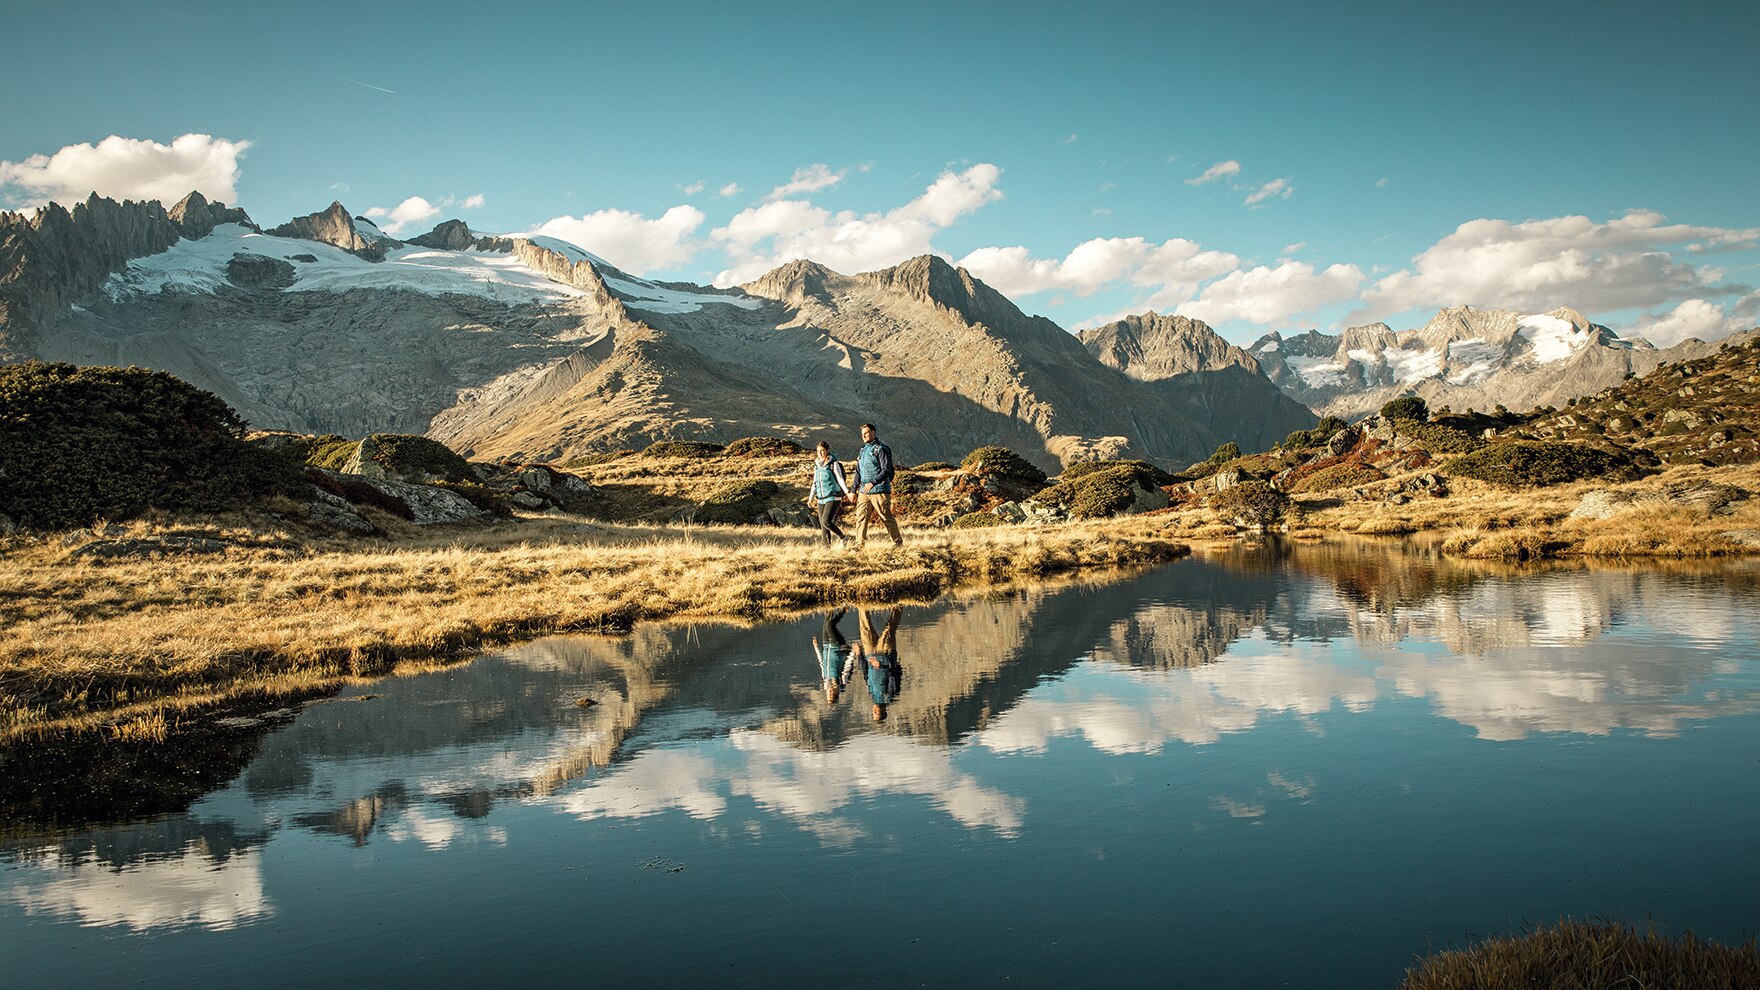 Freier Blick auf den Grossen Aletschgletscher einerseits und das Sonnenplateau mit Riederalp und Bettmeralp andererseits. 